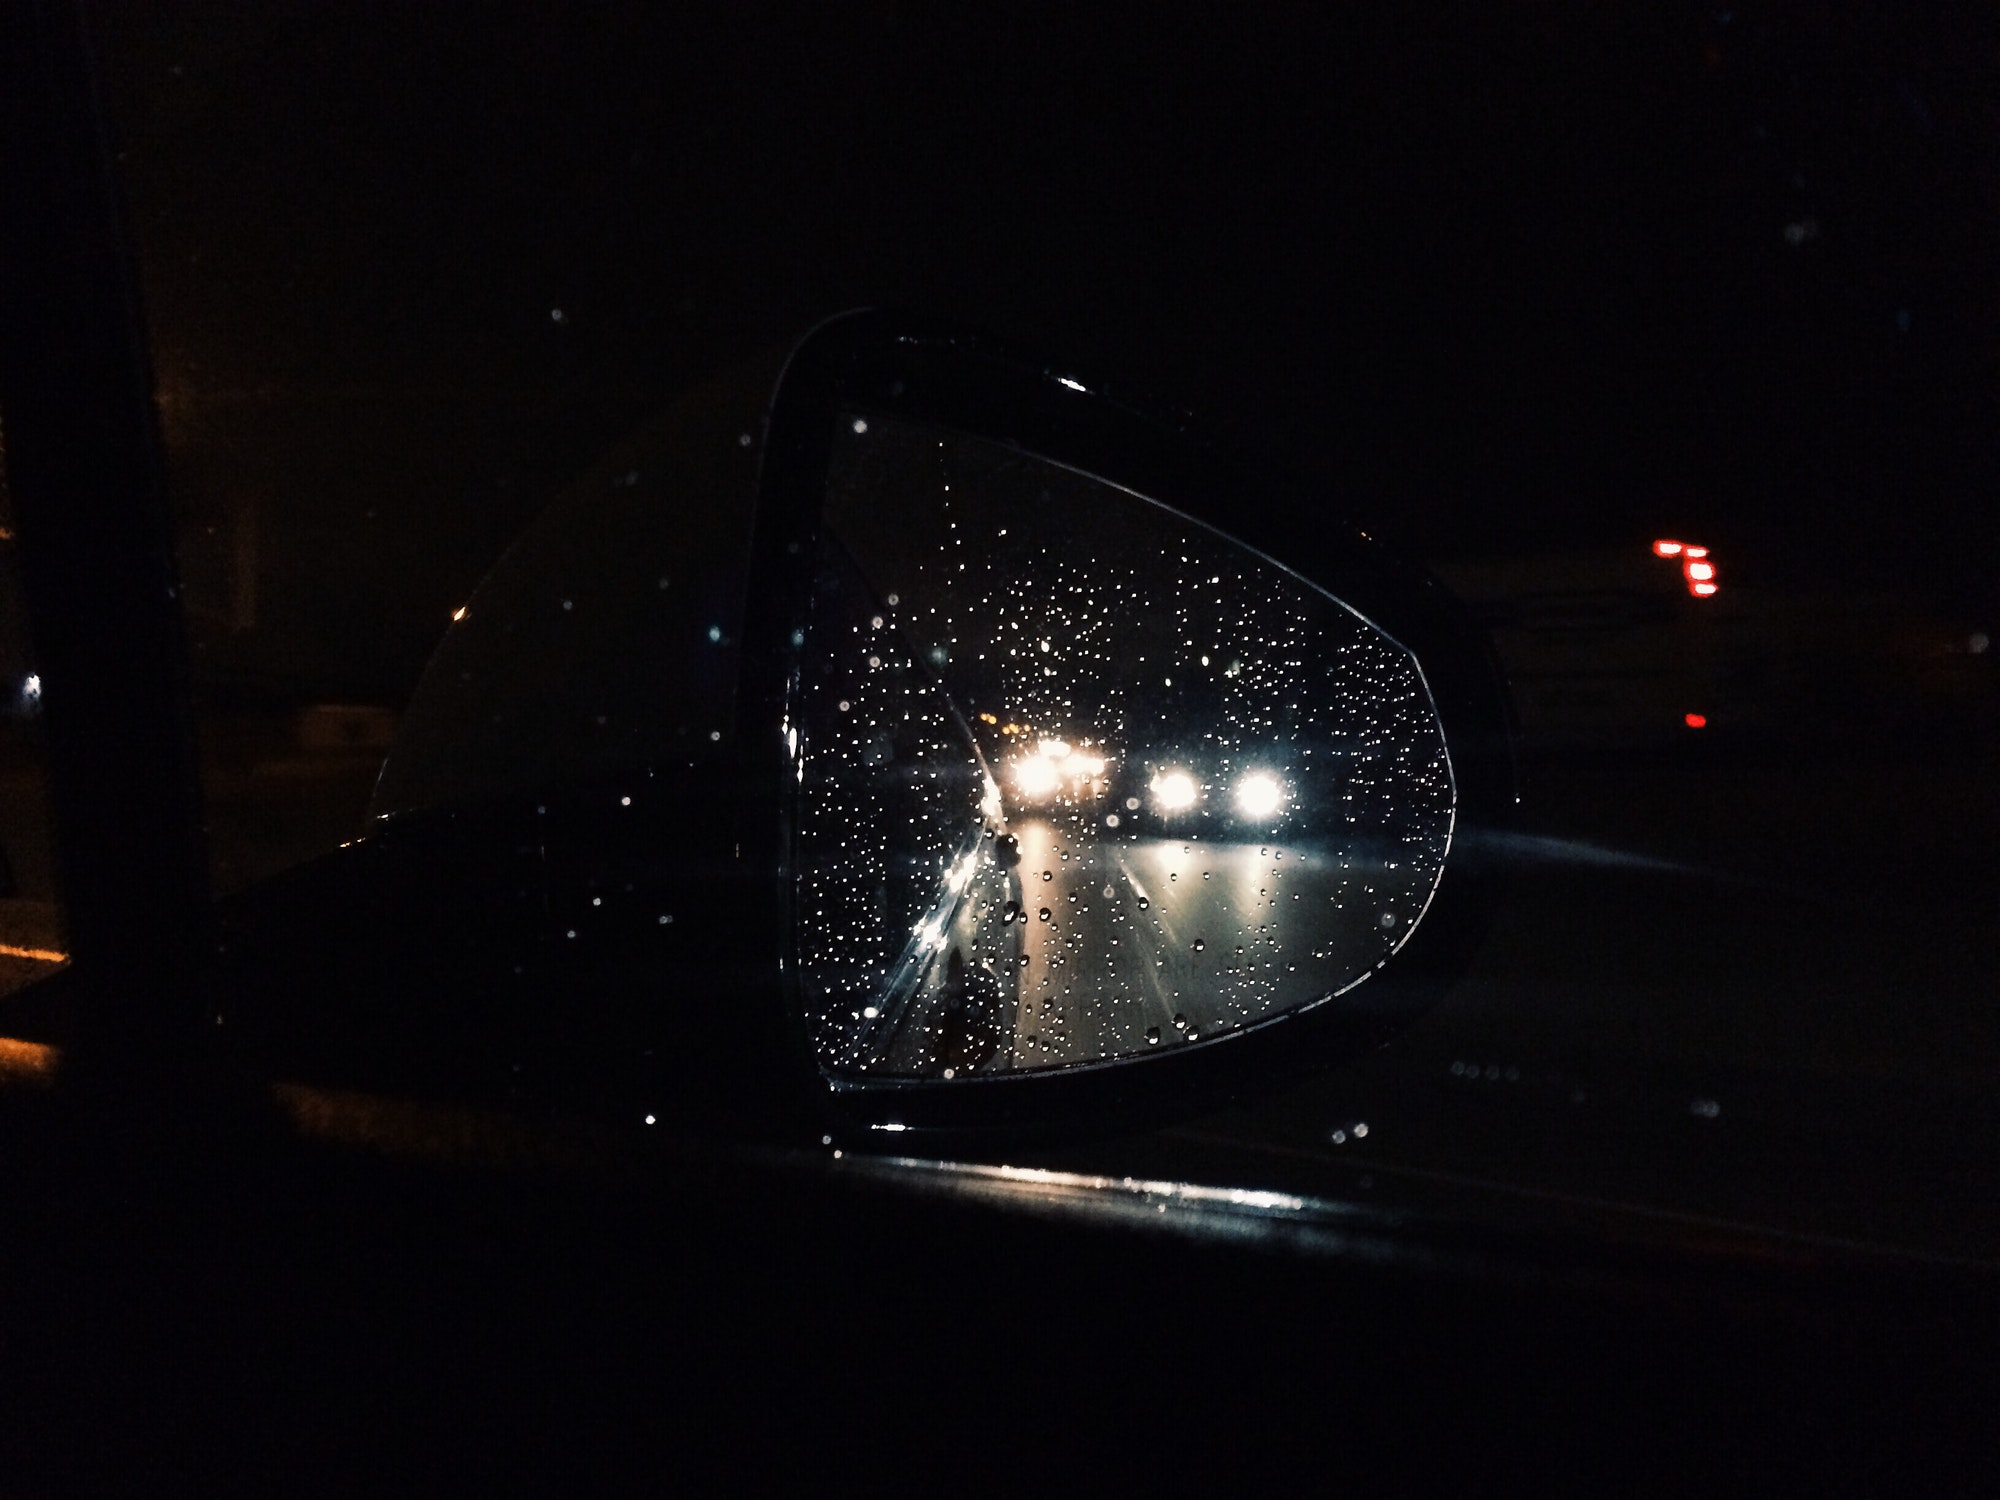 Night drive in the rain